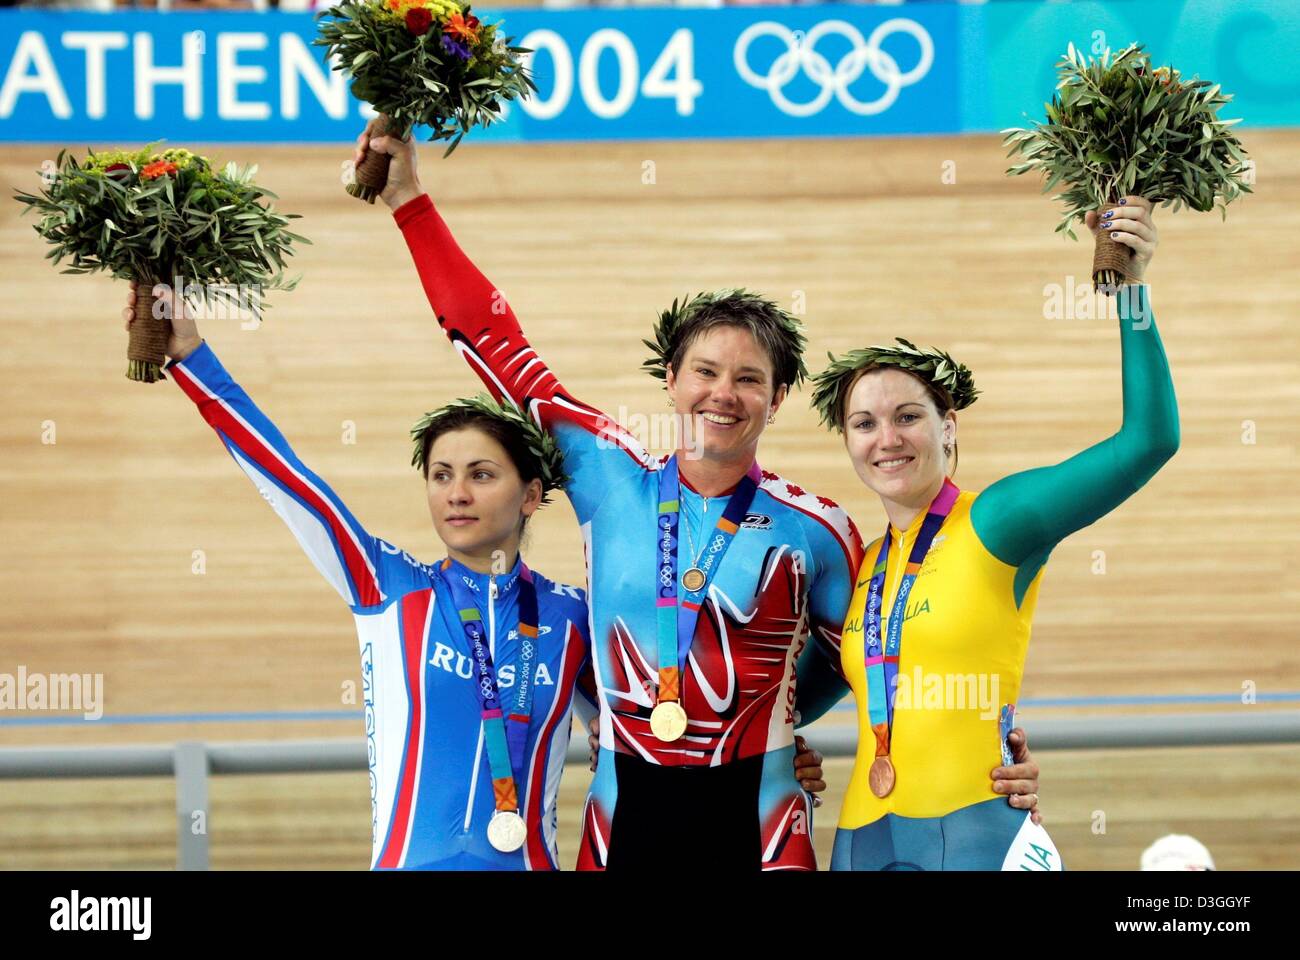 (Dpa) - Oro medaglia Lori-Ann Muenzer (C) dal Canada, Tamilla Abassova (L) dalla Russia e Anna Meares (R) da Australia allegria e sorriso come essi salire sul podio della donna sprint finale al 2004 in occasione dei Giochi Olimpici di Atene, Grecia, 24 agosto 2004. Abassova ha vinto l'argento, Meares ha preso il bronzo. EPA/dpa Gero Breloer Foto Stock